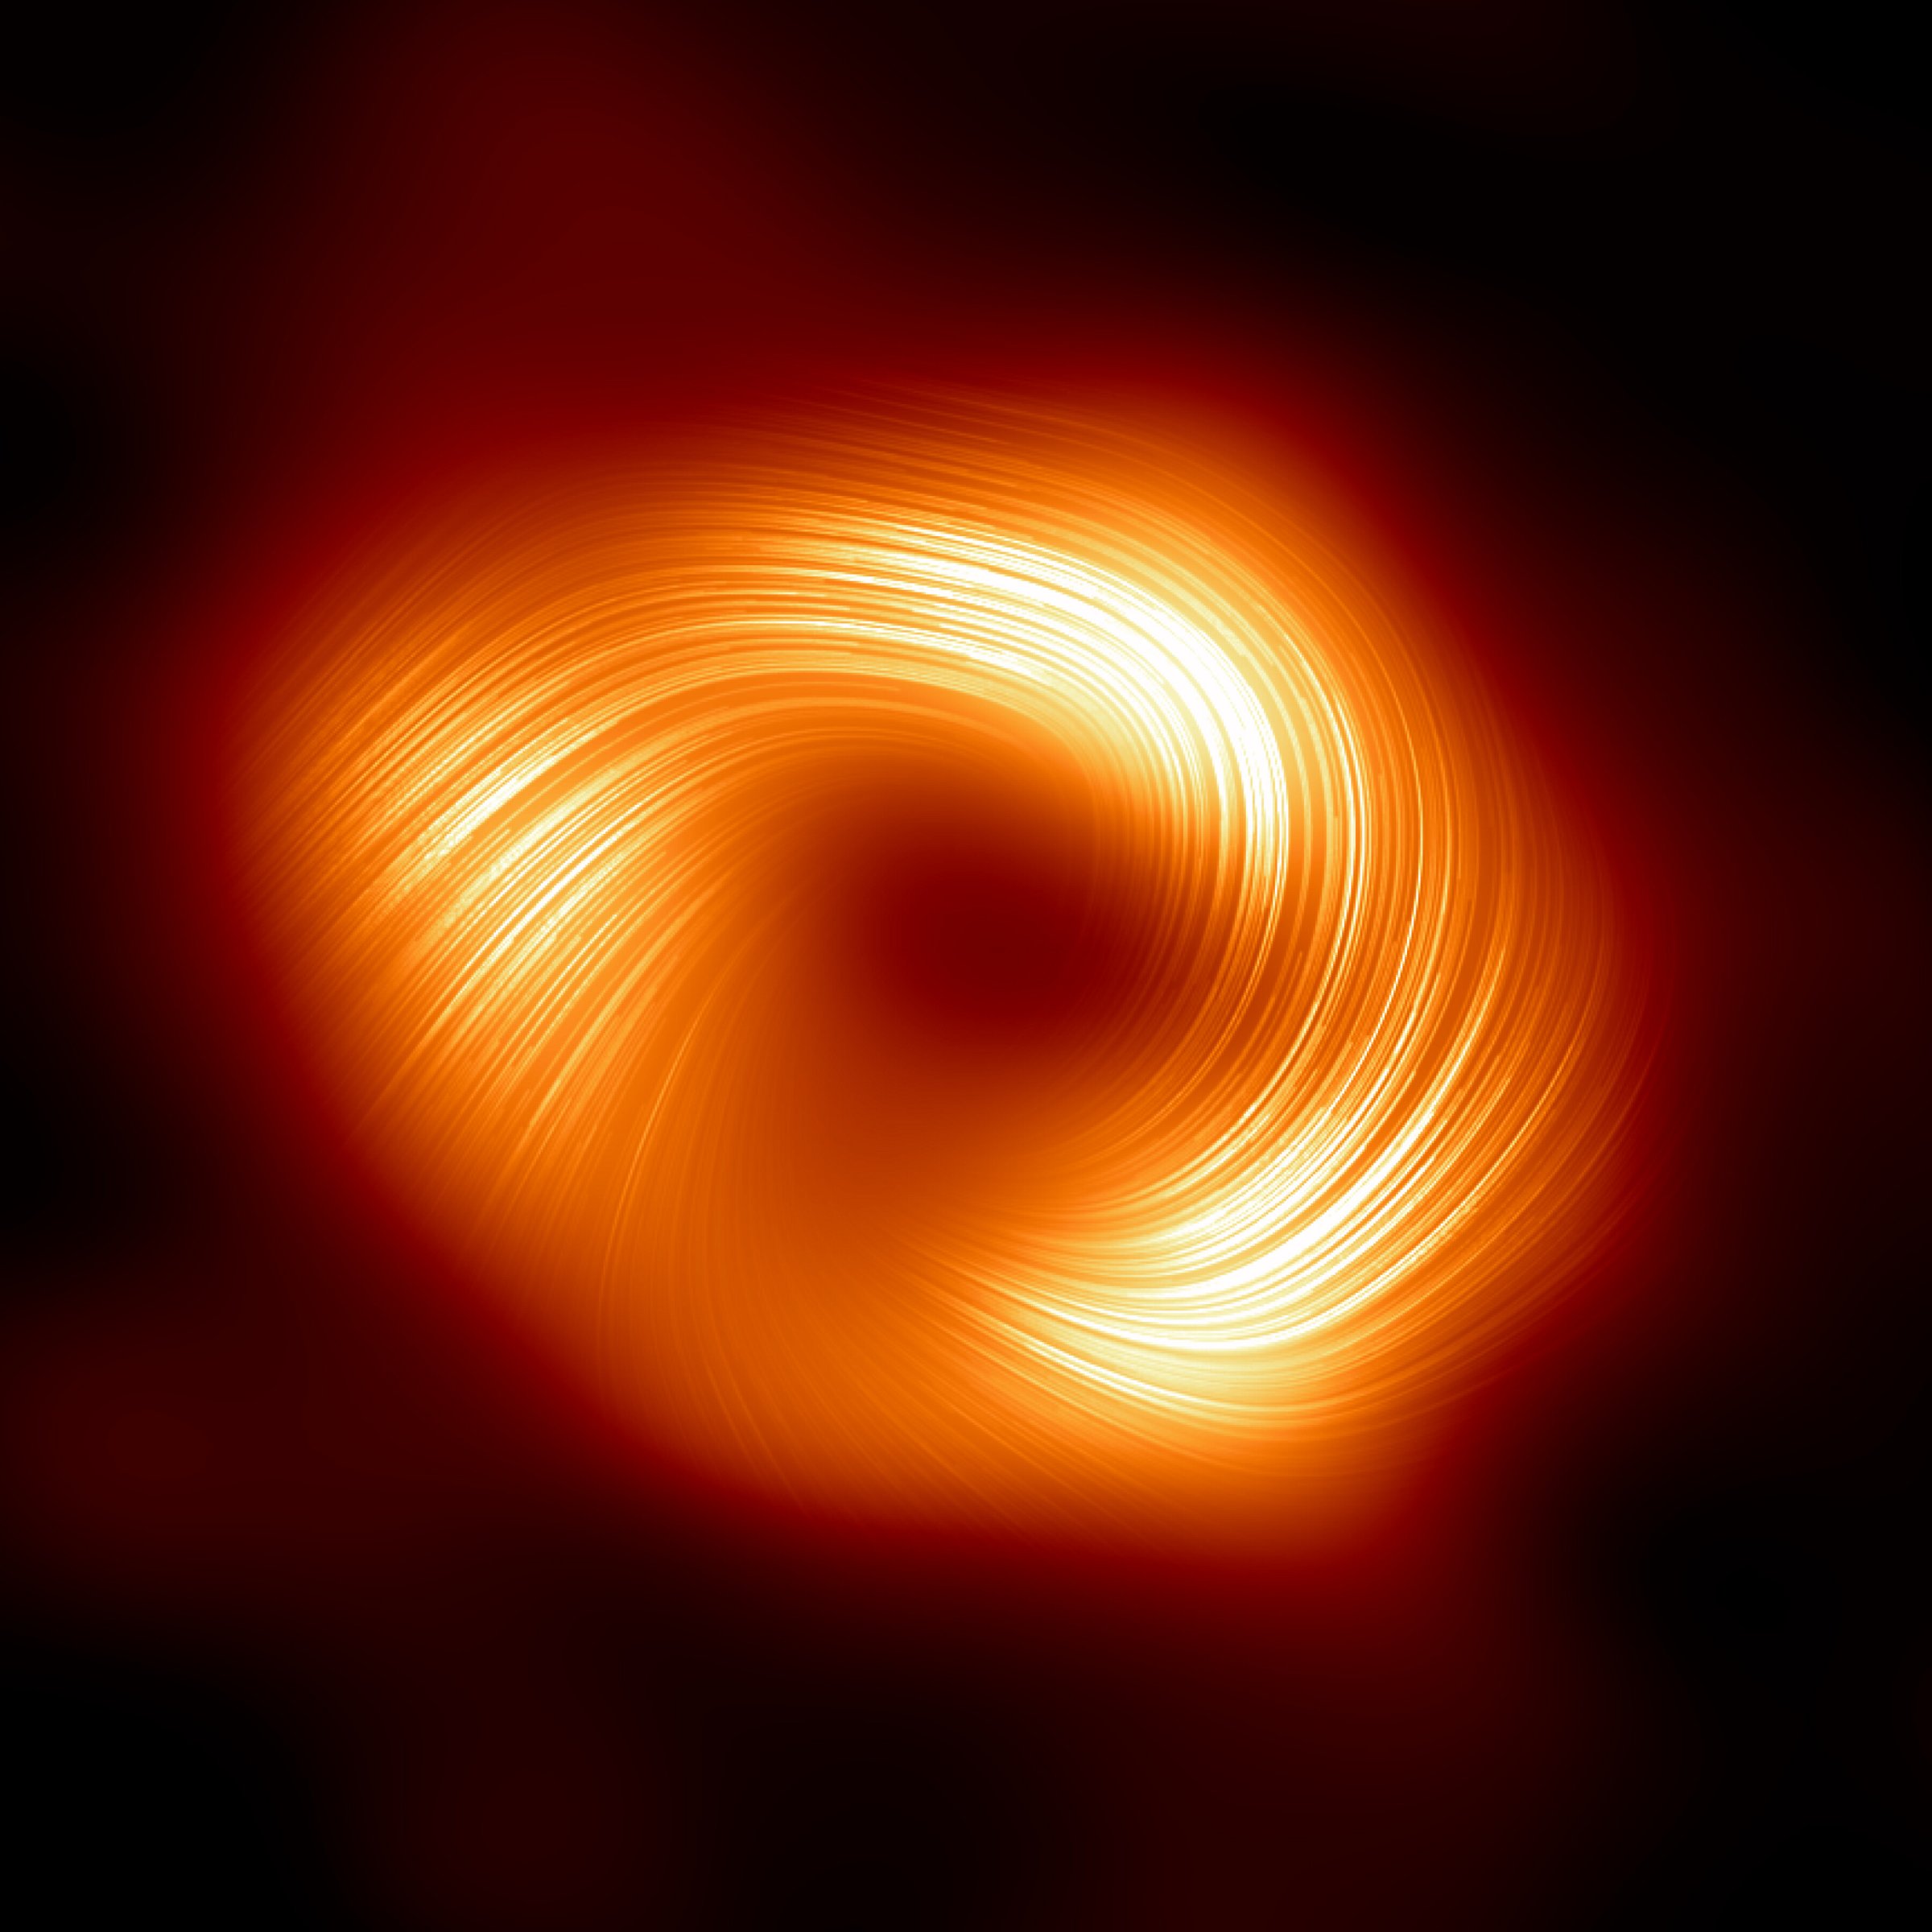 Das Schwarze Loch SgrA*: Die Magnetfelder liegen spiralförmig um den zentralen Schatten des Schwarzen Lochs herum. Bild: EHT Collaboration